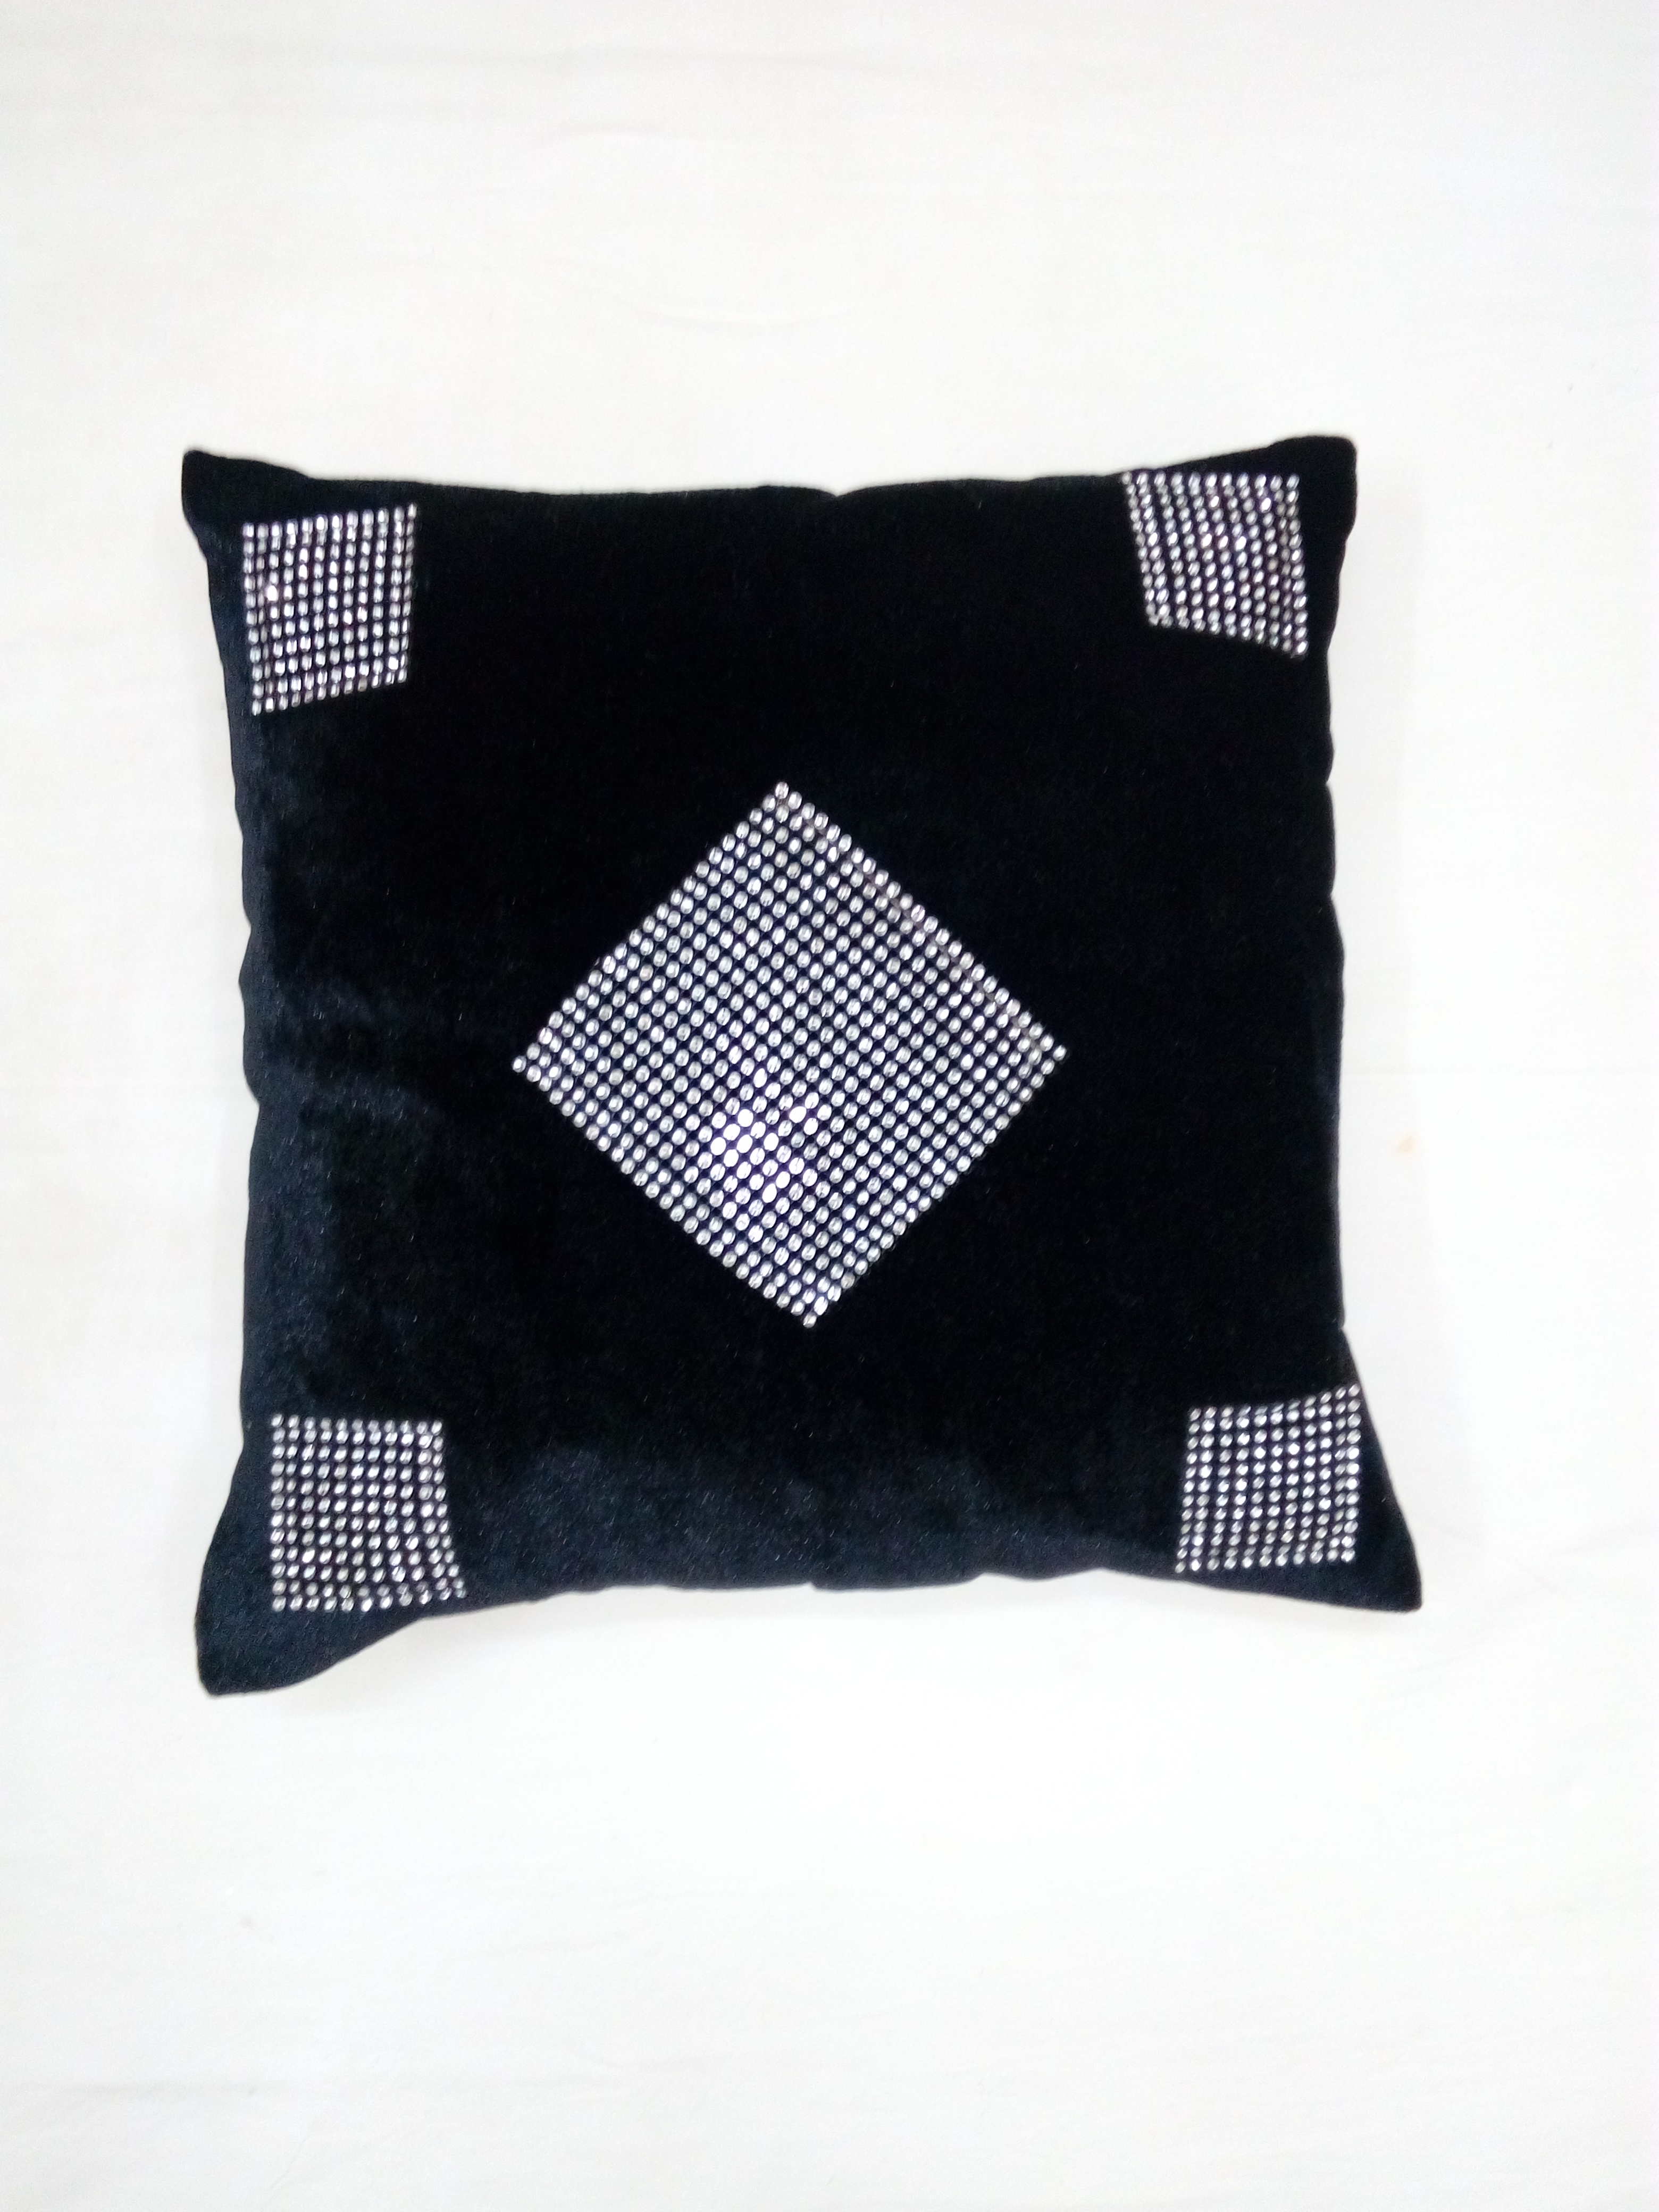 Designer Velvet Cushions